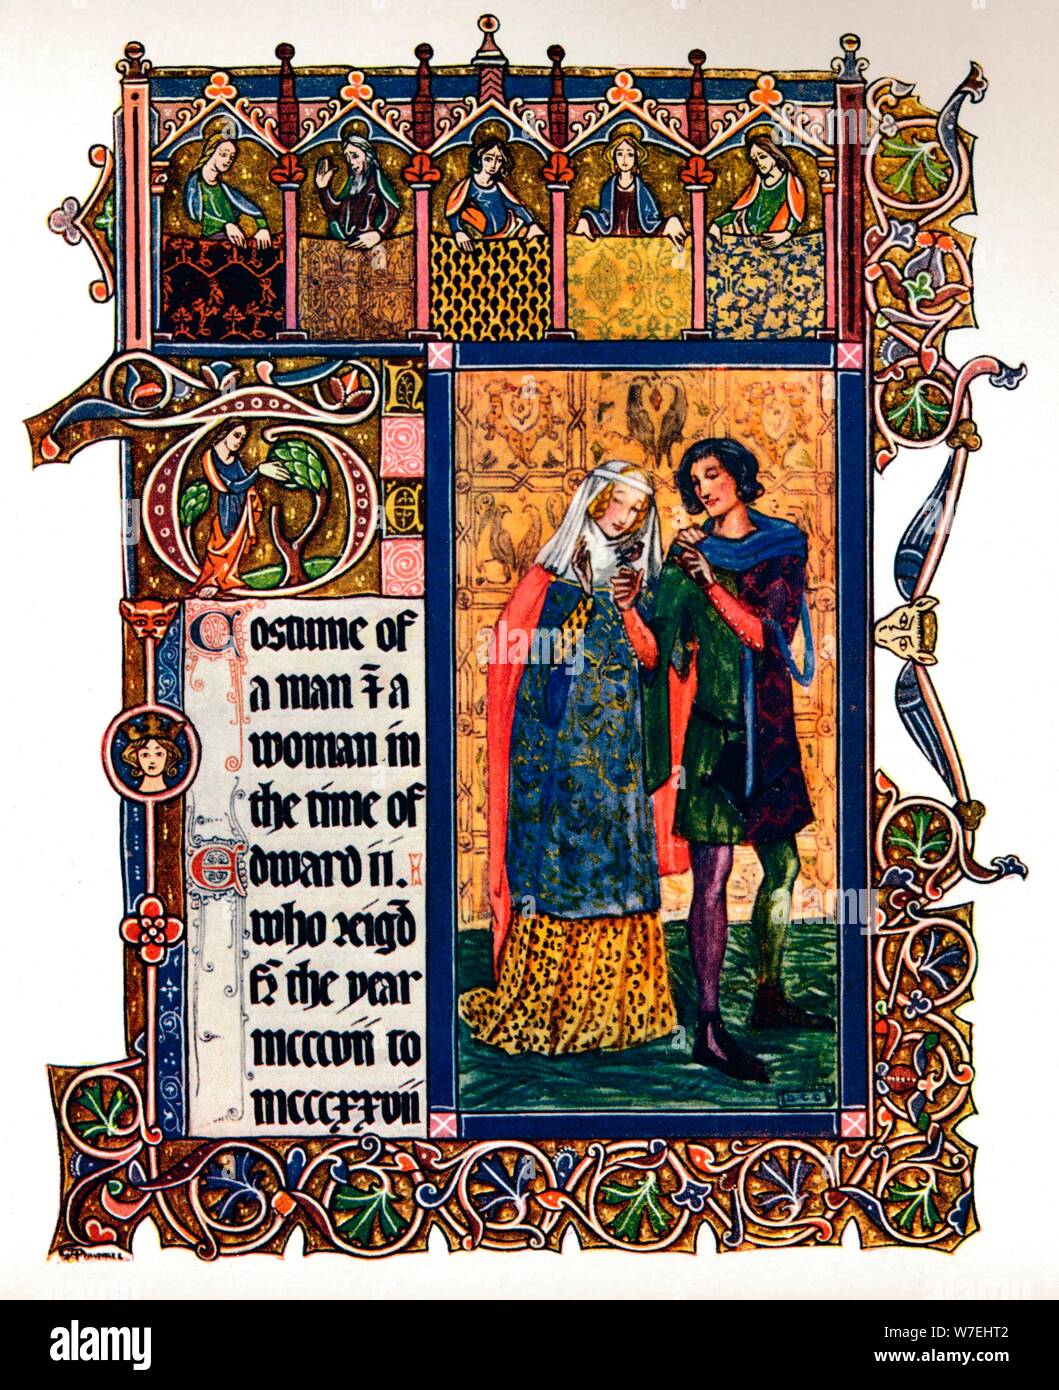 Traje de un hombre y una mujer en la época de Eduardo II, (1909). Artista: Desconocido Foto de stock